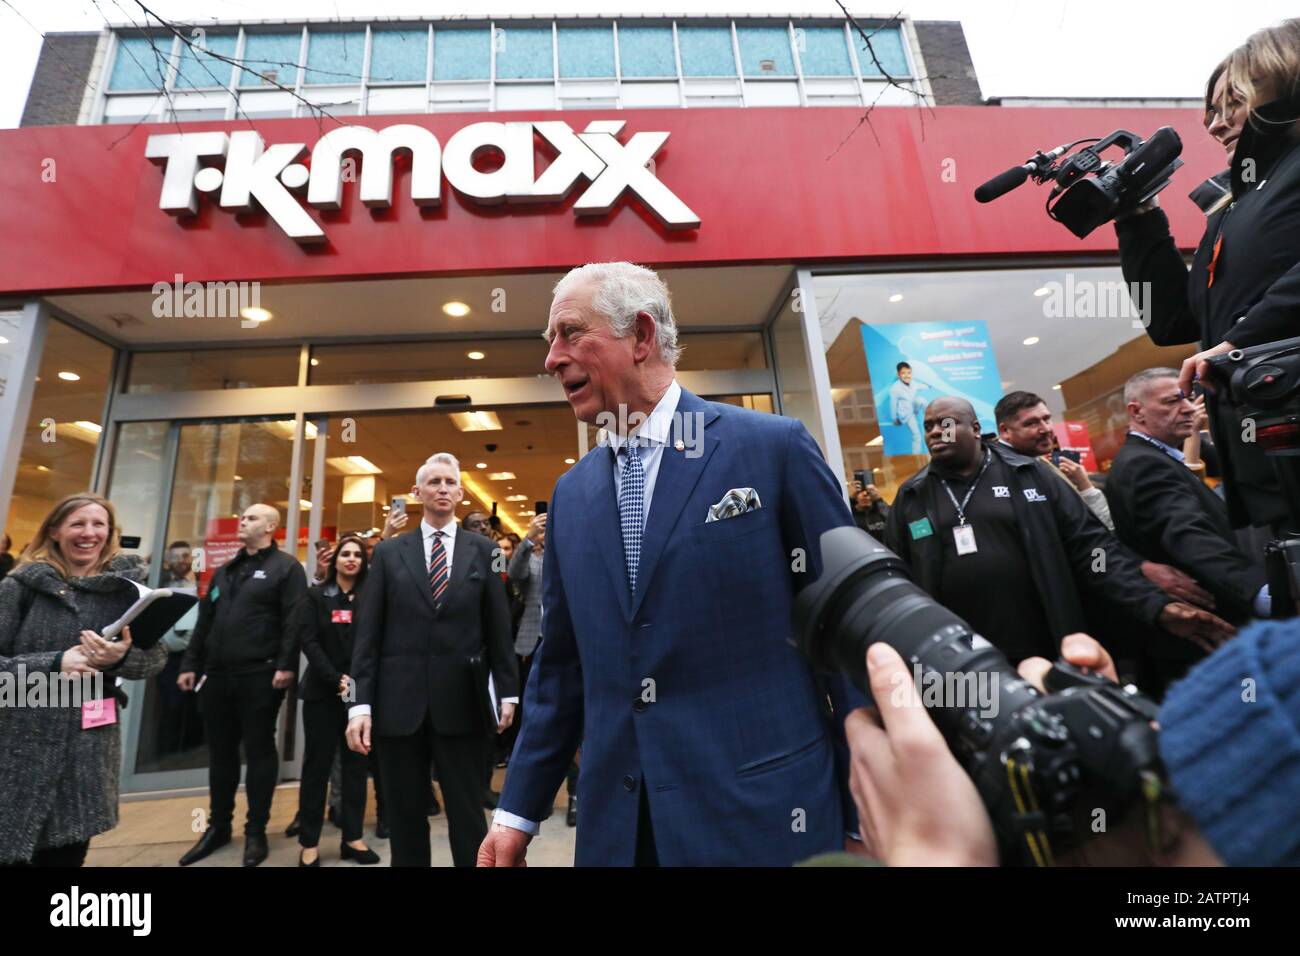 Der Prince of Wales verlässt einen TK Maxx Store in der Tooting High Street, London, nachdem er sich mit Mitarbeitern, die Prince's Trust Alumni im Laden sind, zusammenfindet. Stockfoto